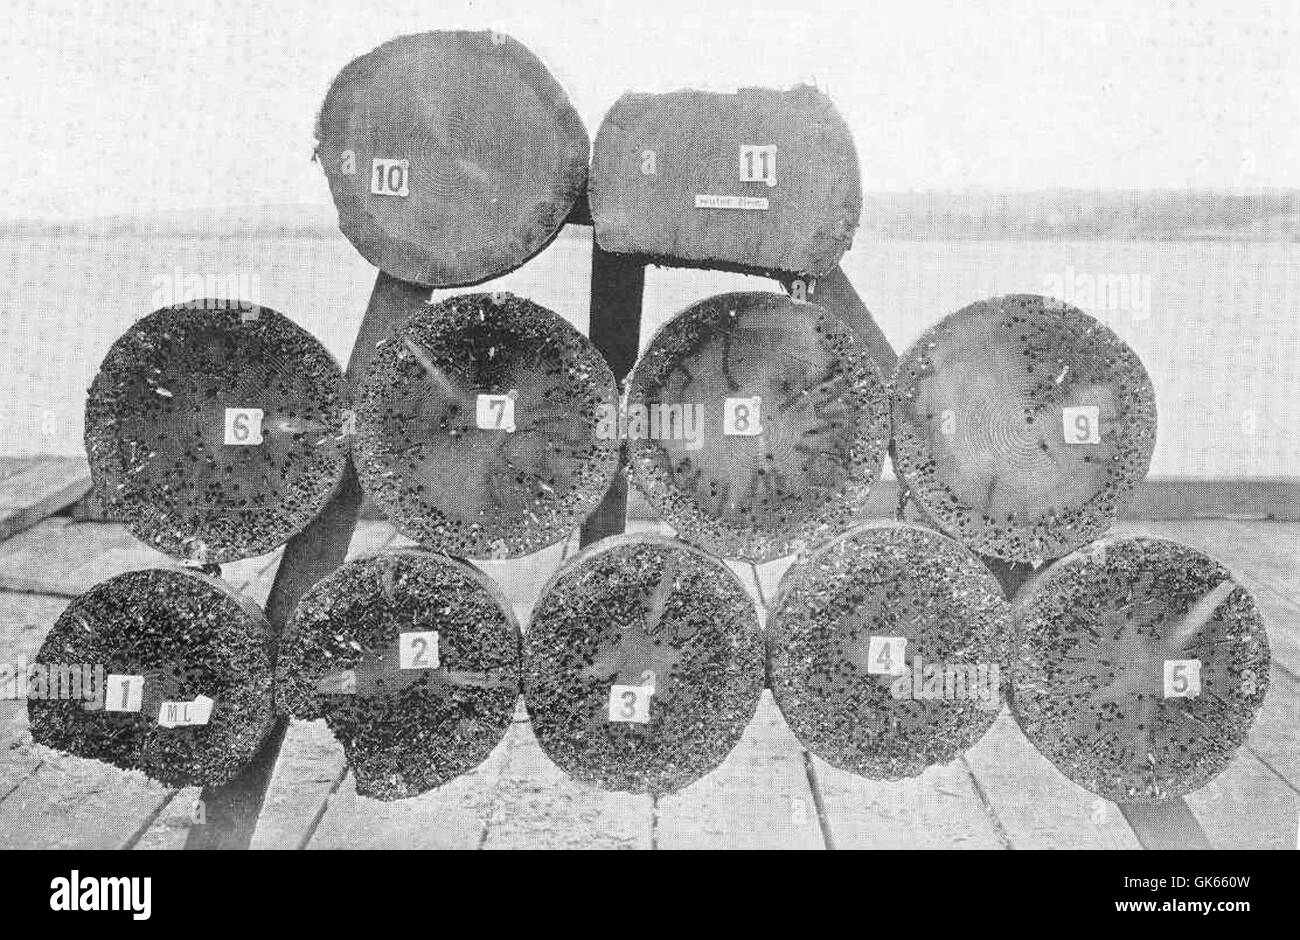 49810 Fender Haufen, Shell Oil Company dock, Martinez, Kalifornien Abschnitte drei Füße auseinander, Schlamm-Linie zu hoch Wasser November 1920 Hinweis Stockfoto